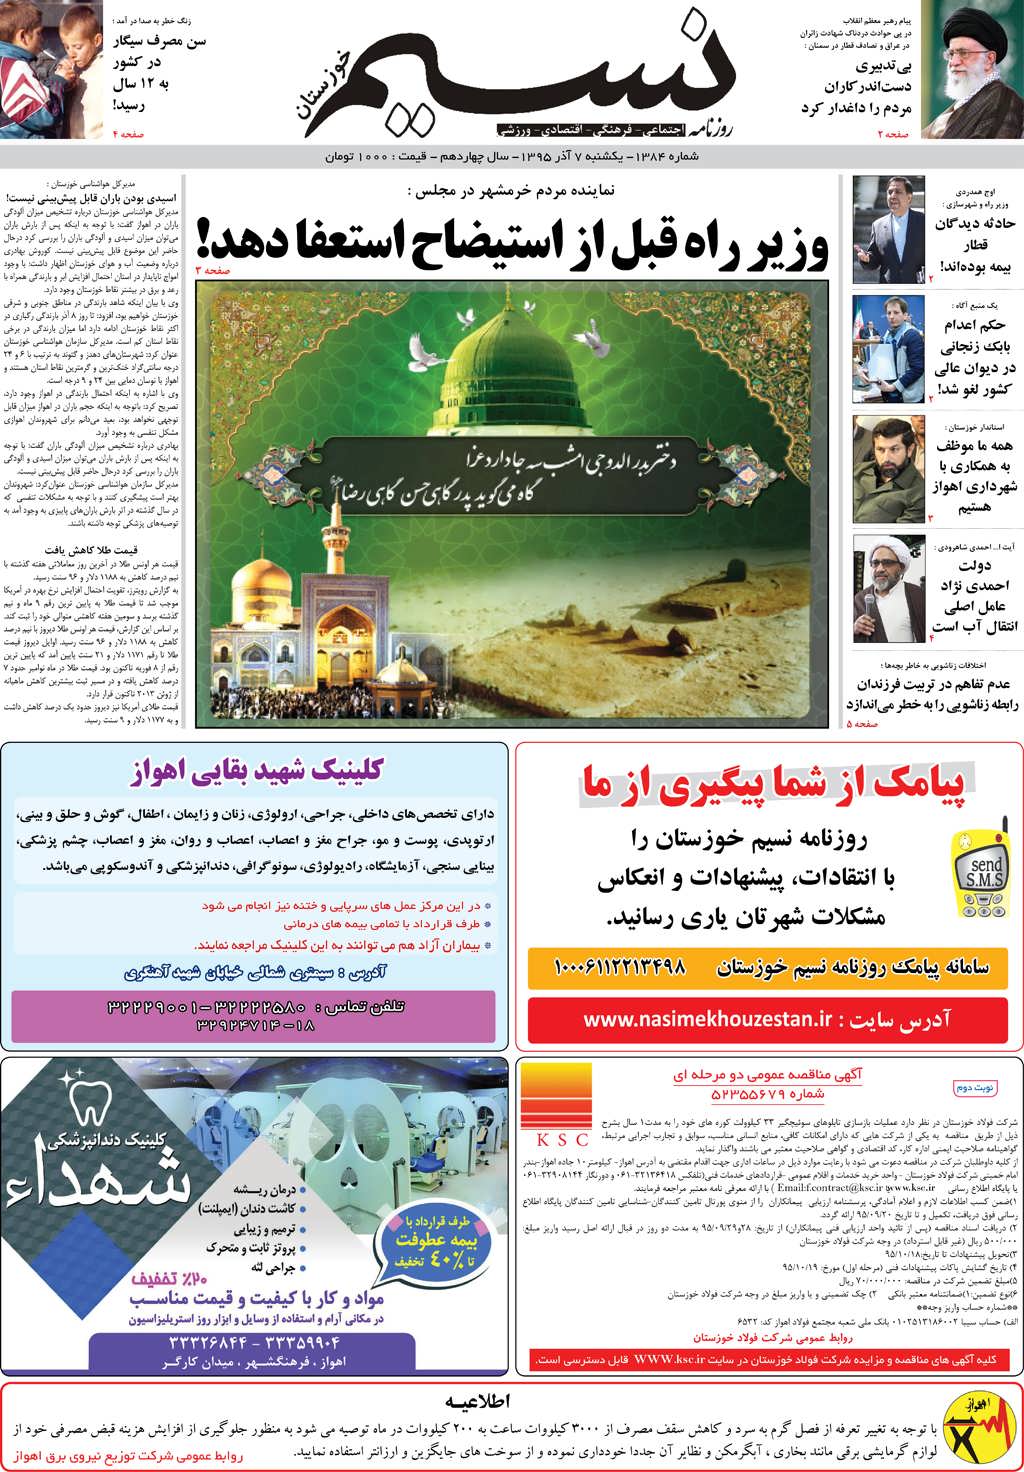 صفحه اصلی روزنامه نسیم شماره 1384